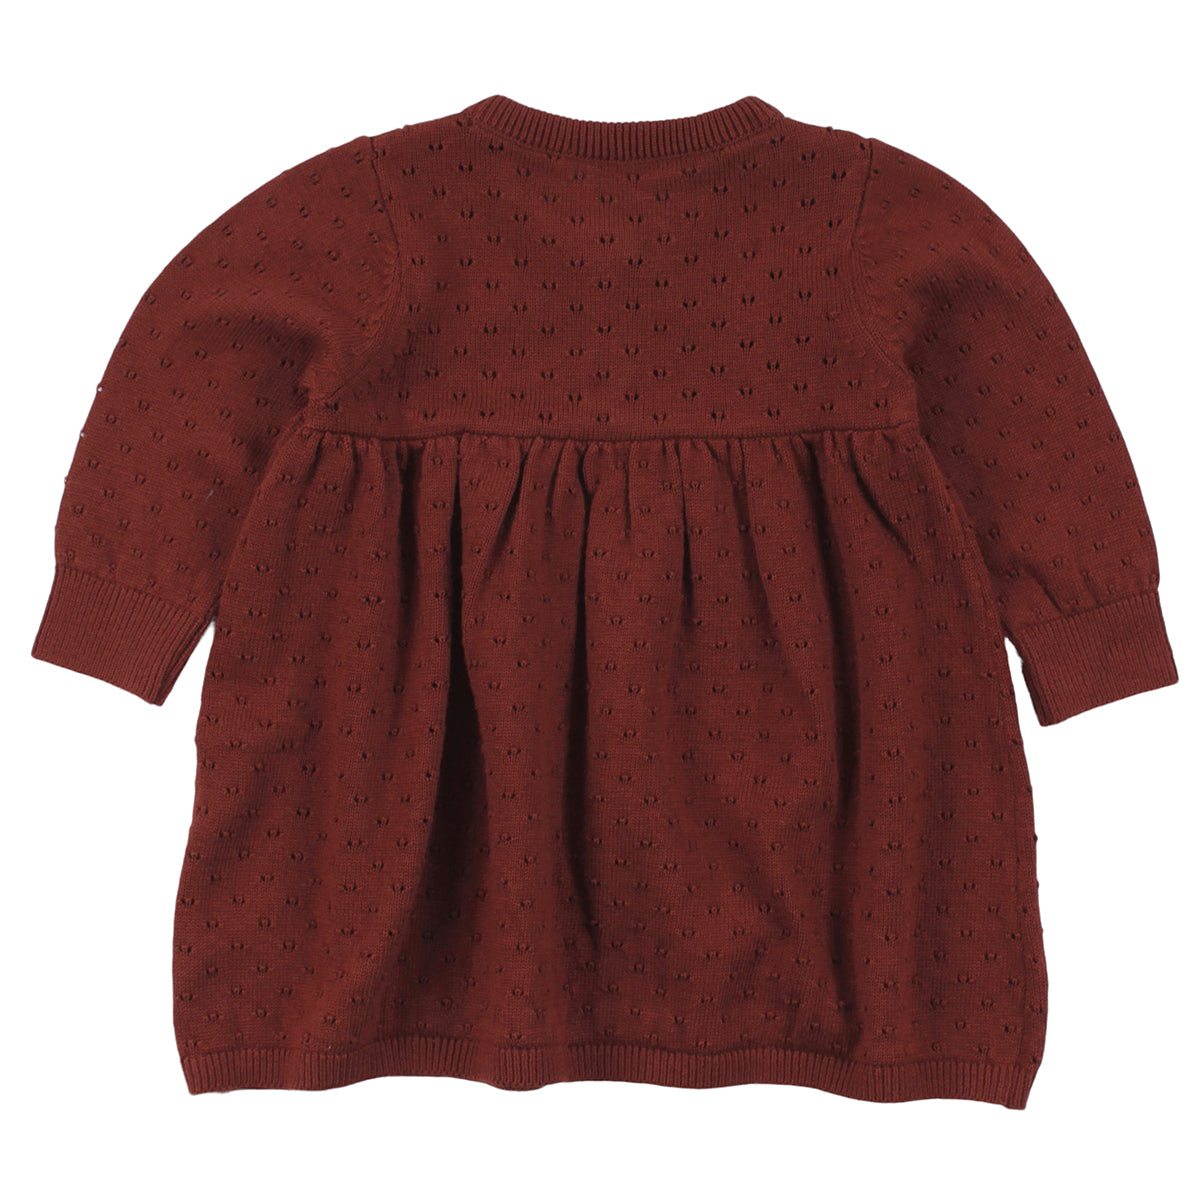 Red velvet knitted dress back